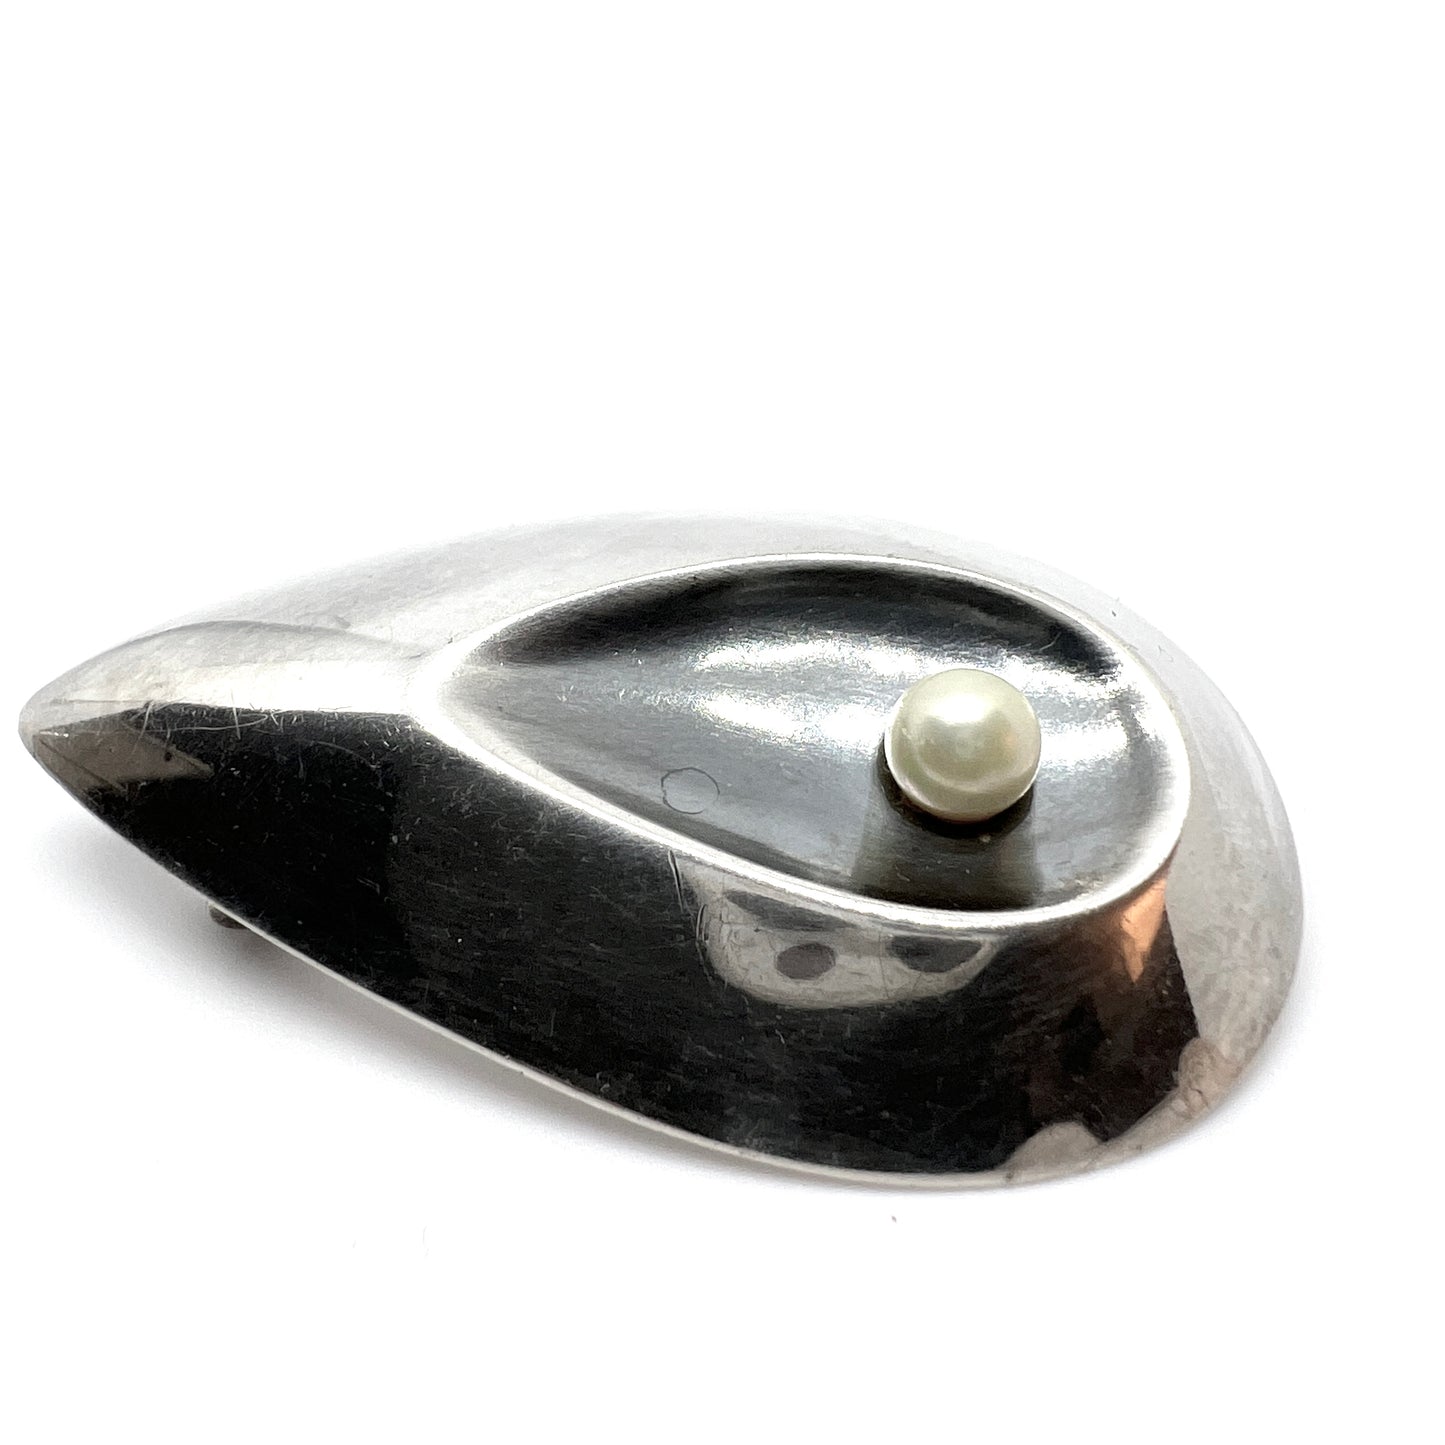 Axelsson for G Dahlgren, Sweden 1960. Vintage Solid Silver Cultured Pearl Brooch. Signed.